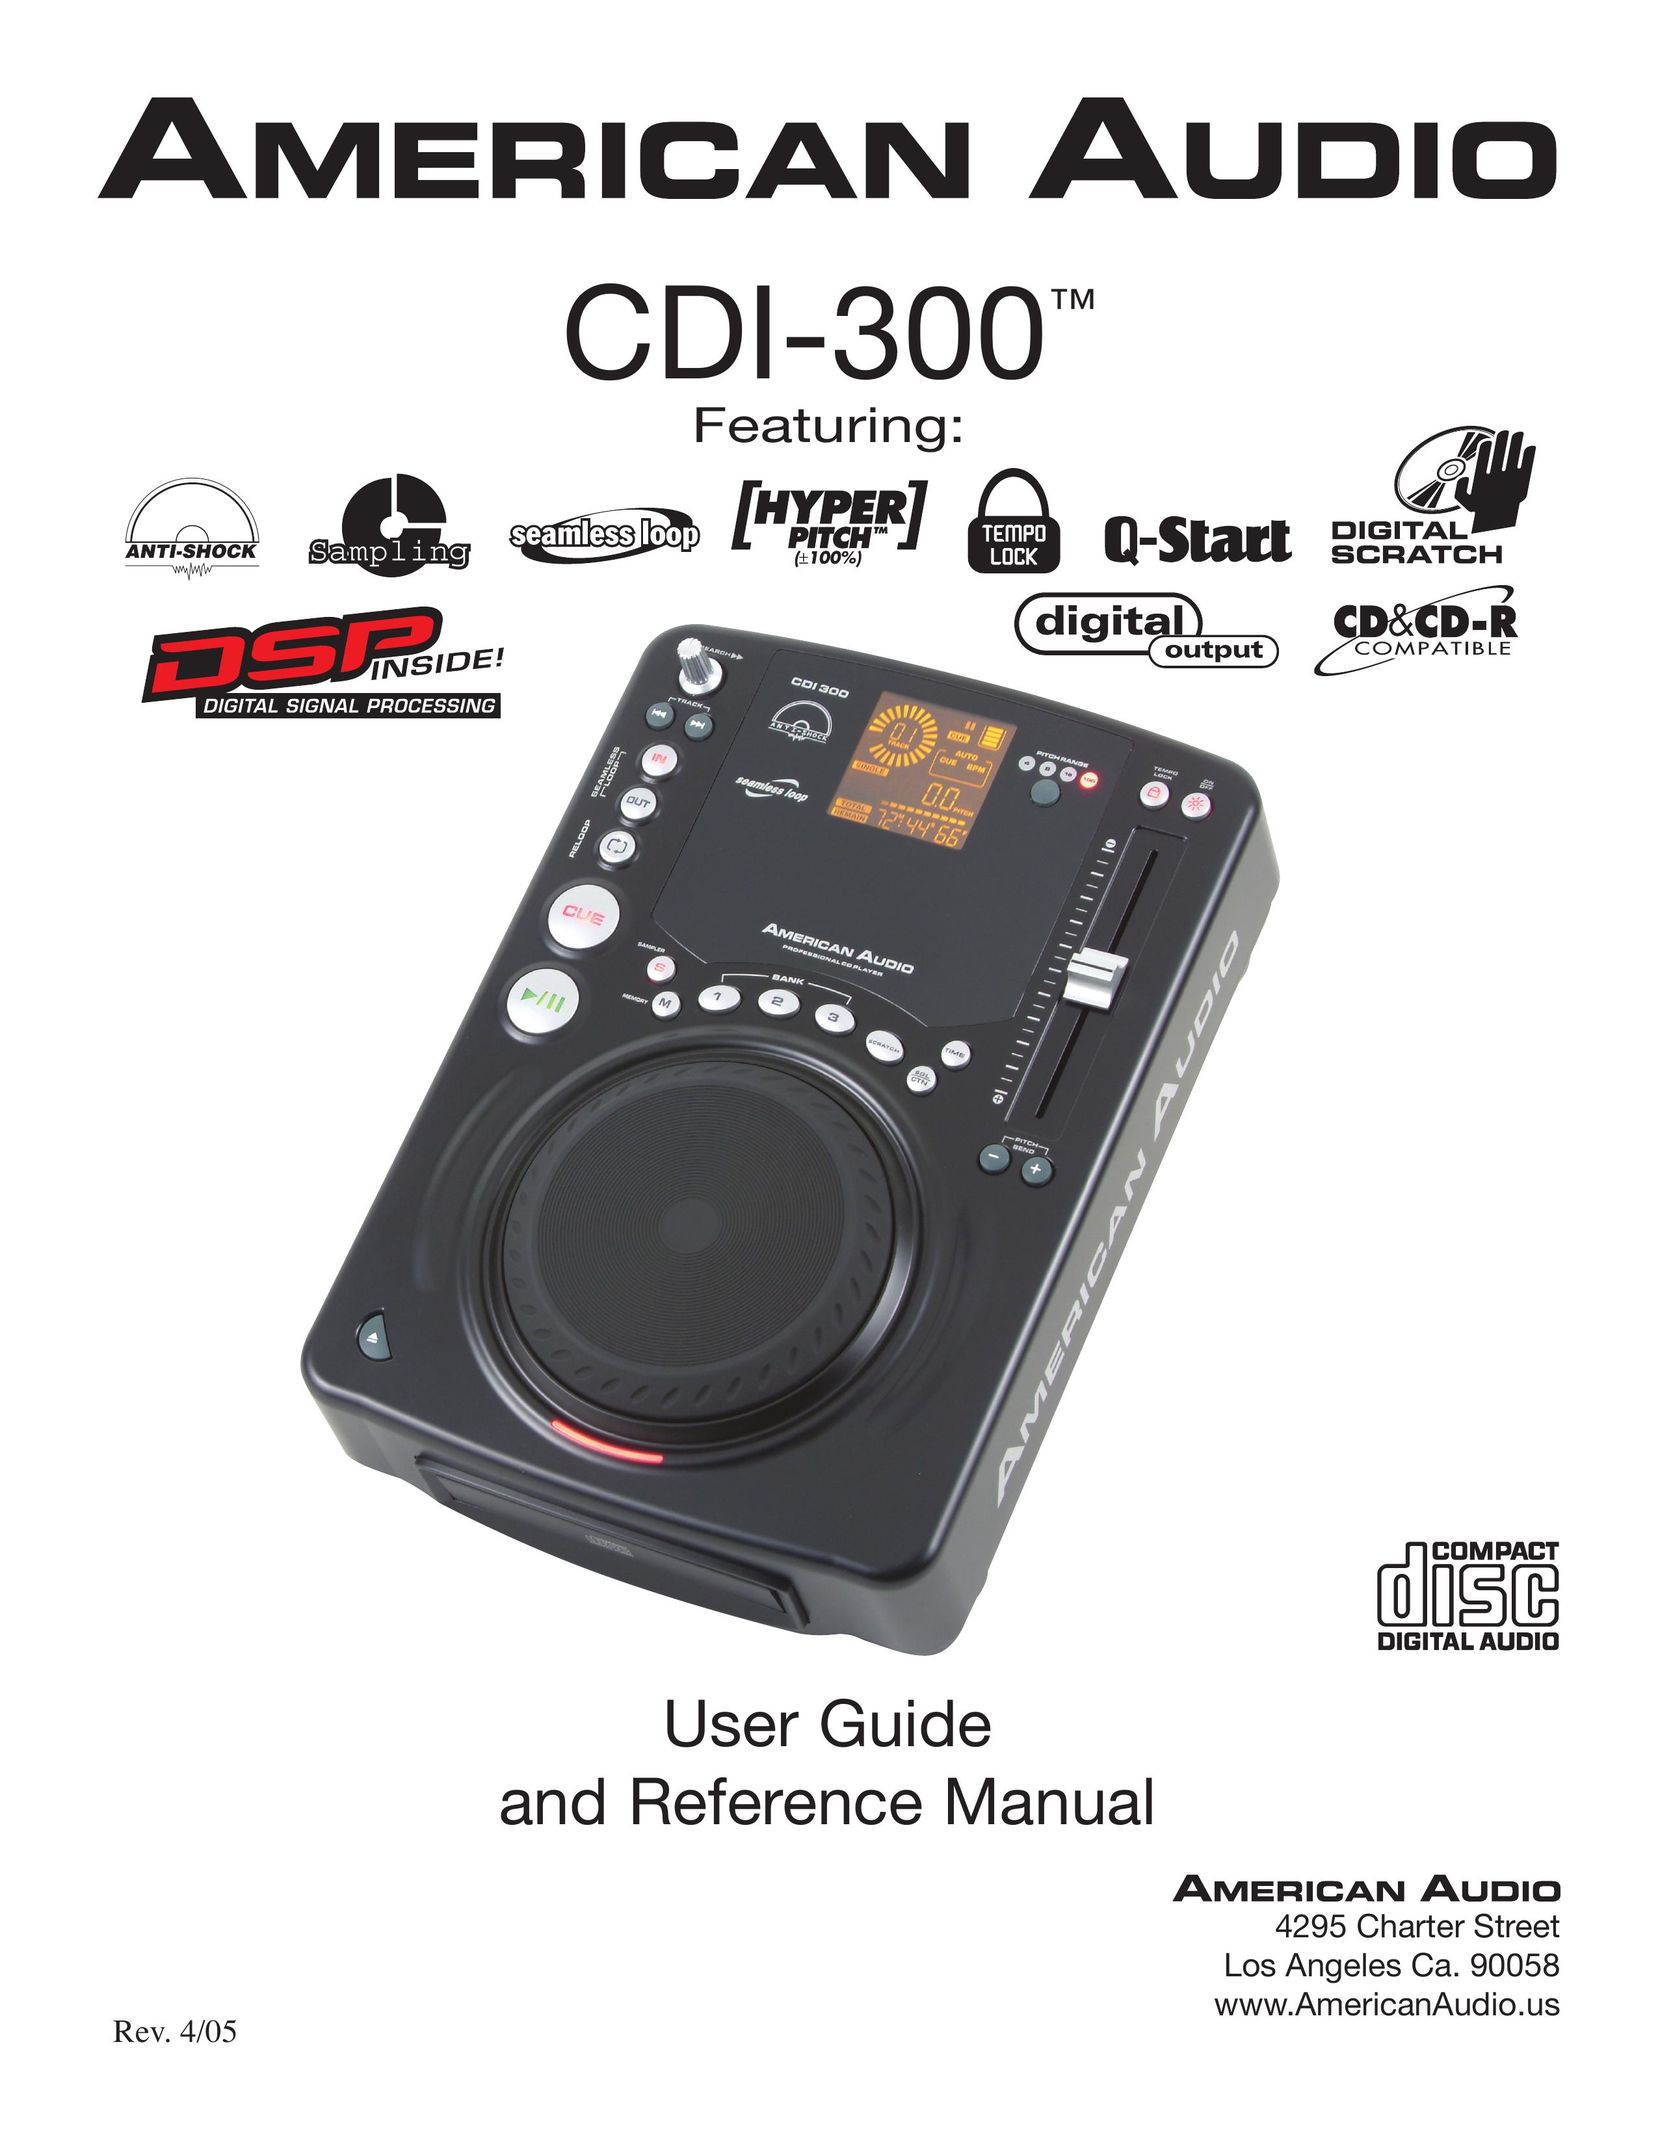 American Audio CDI-300 CD Player User Manual